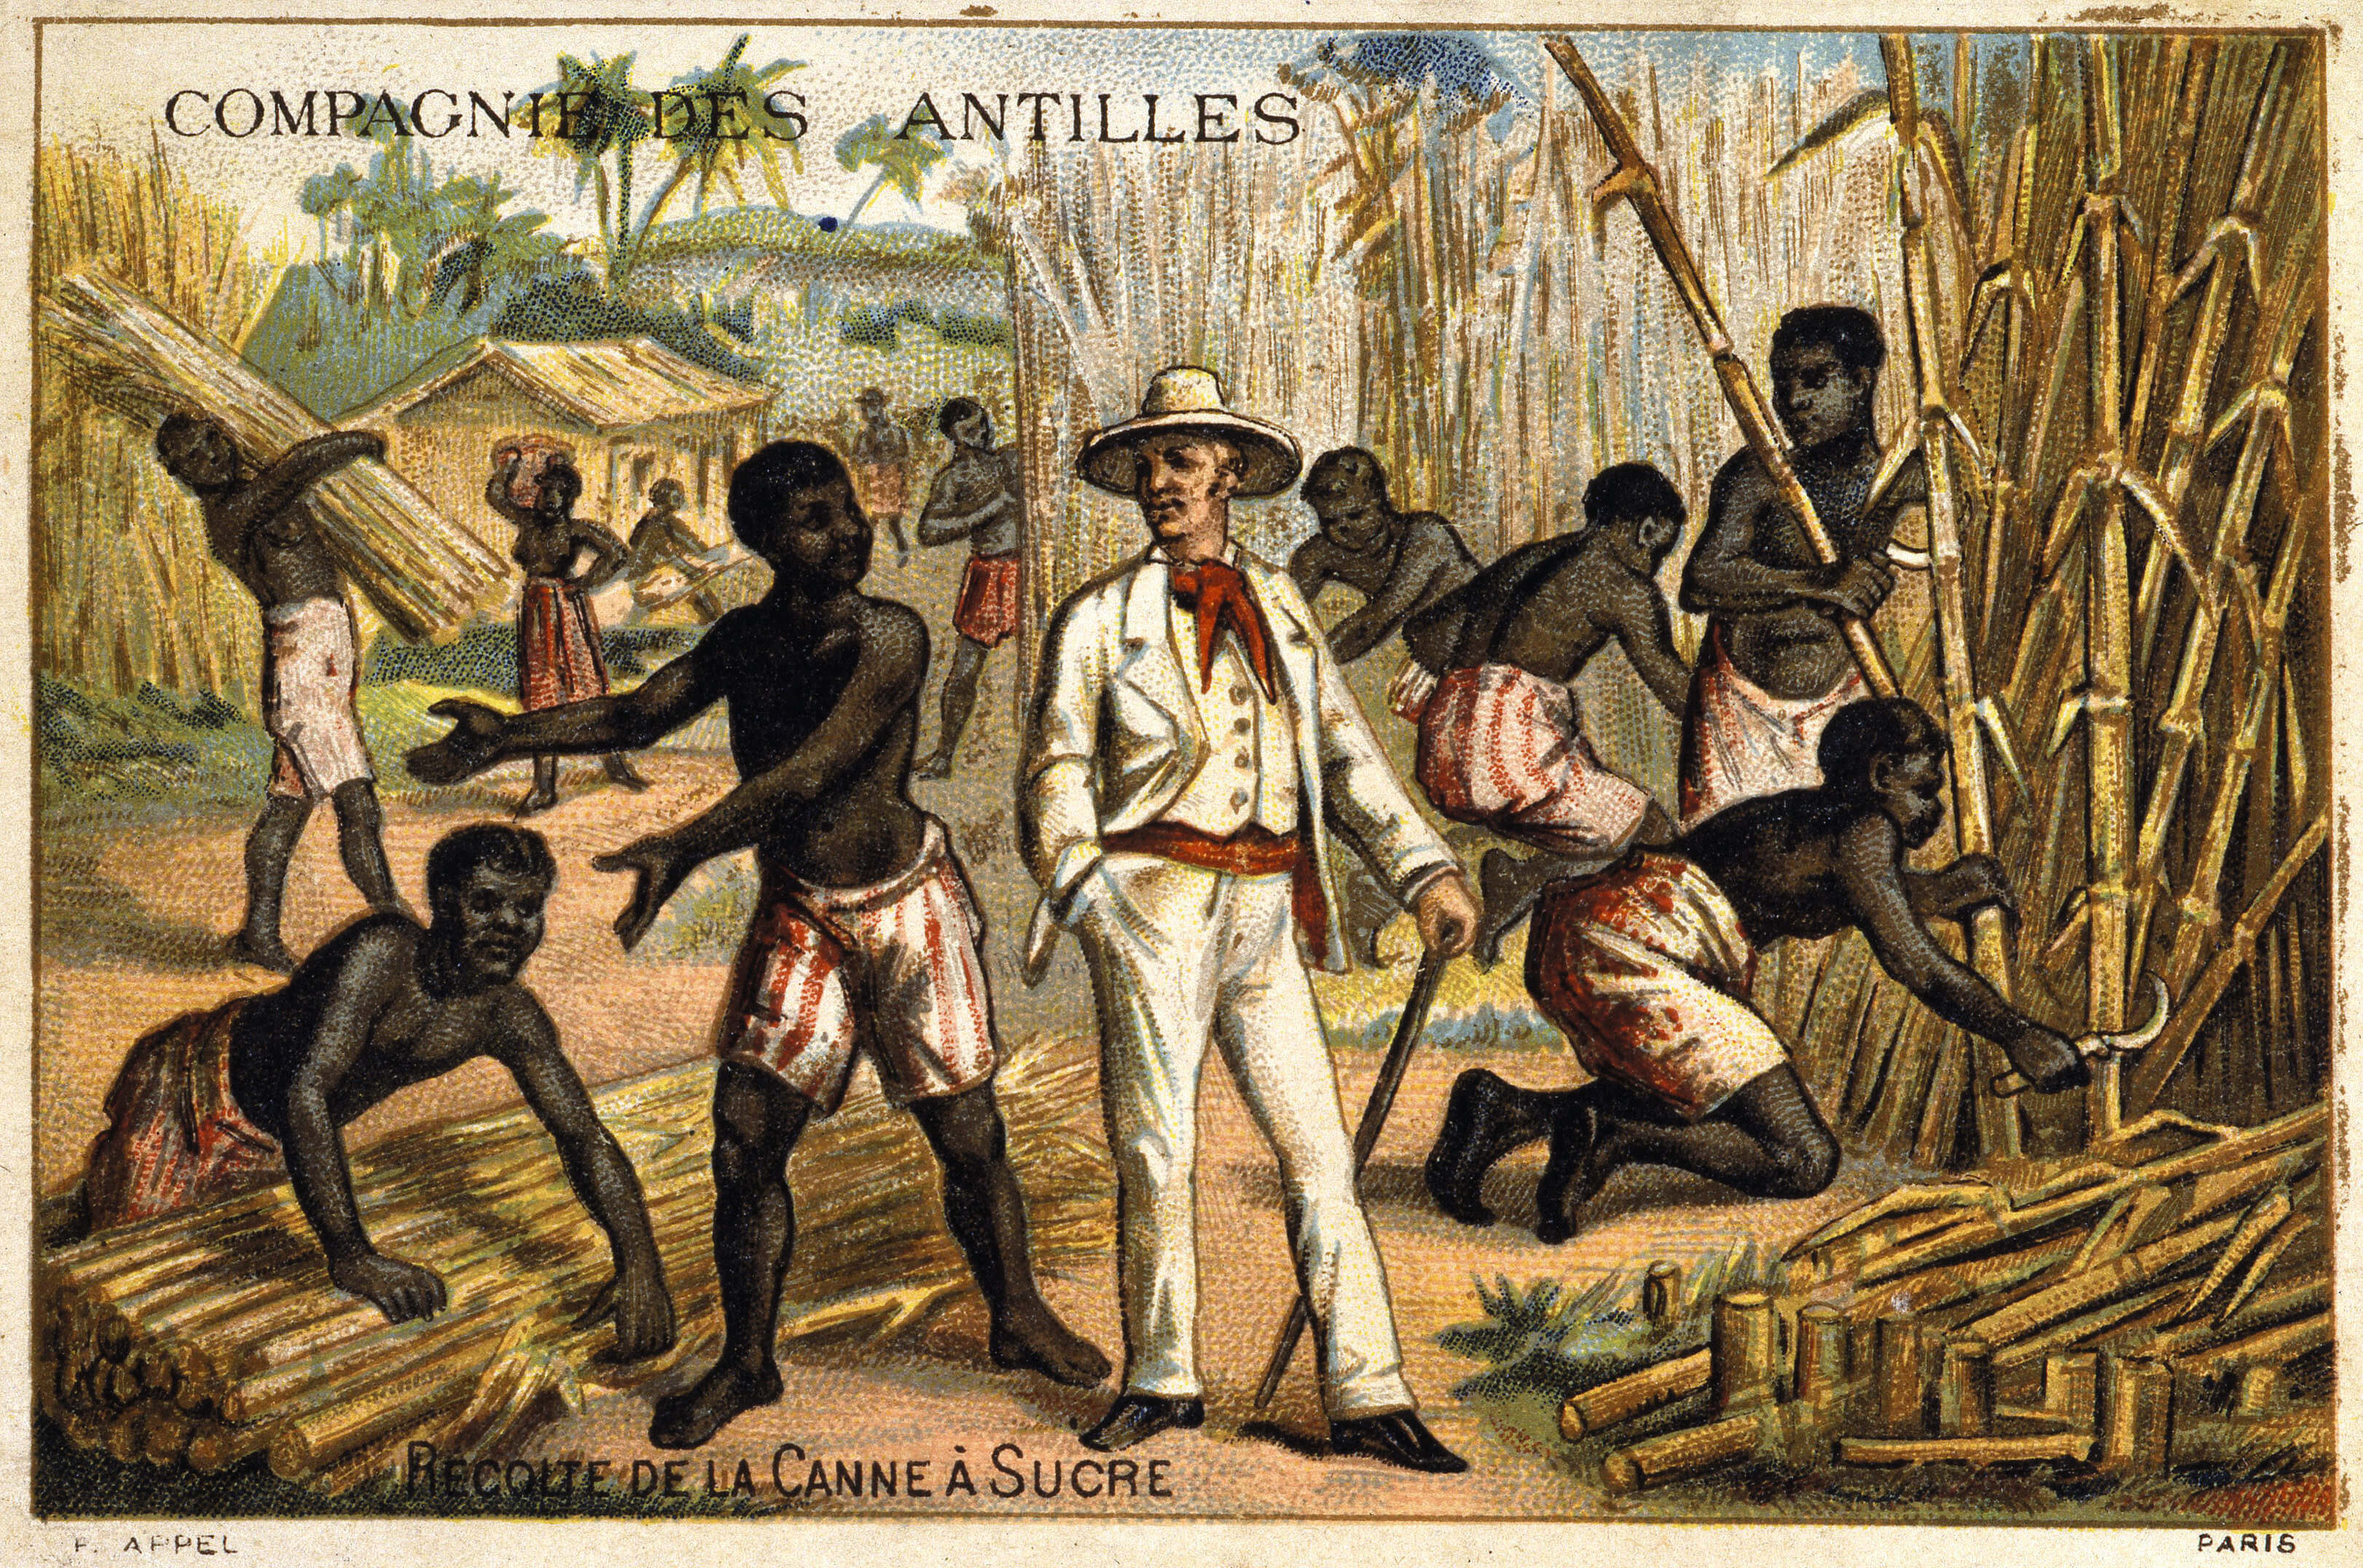 Zuckerrohrernte auf einer Plantage der Compagnie des Antilles, 19. Jhd.Foto: Imago Images / Kharbine-Tapabor